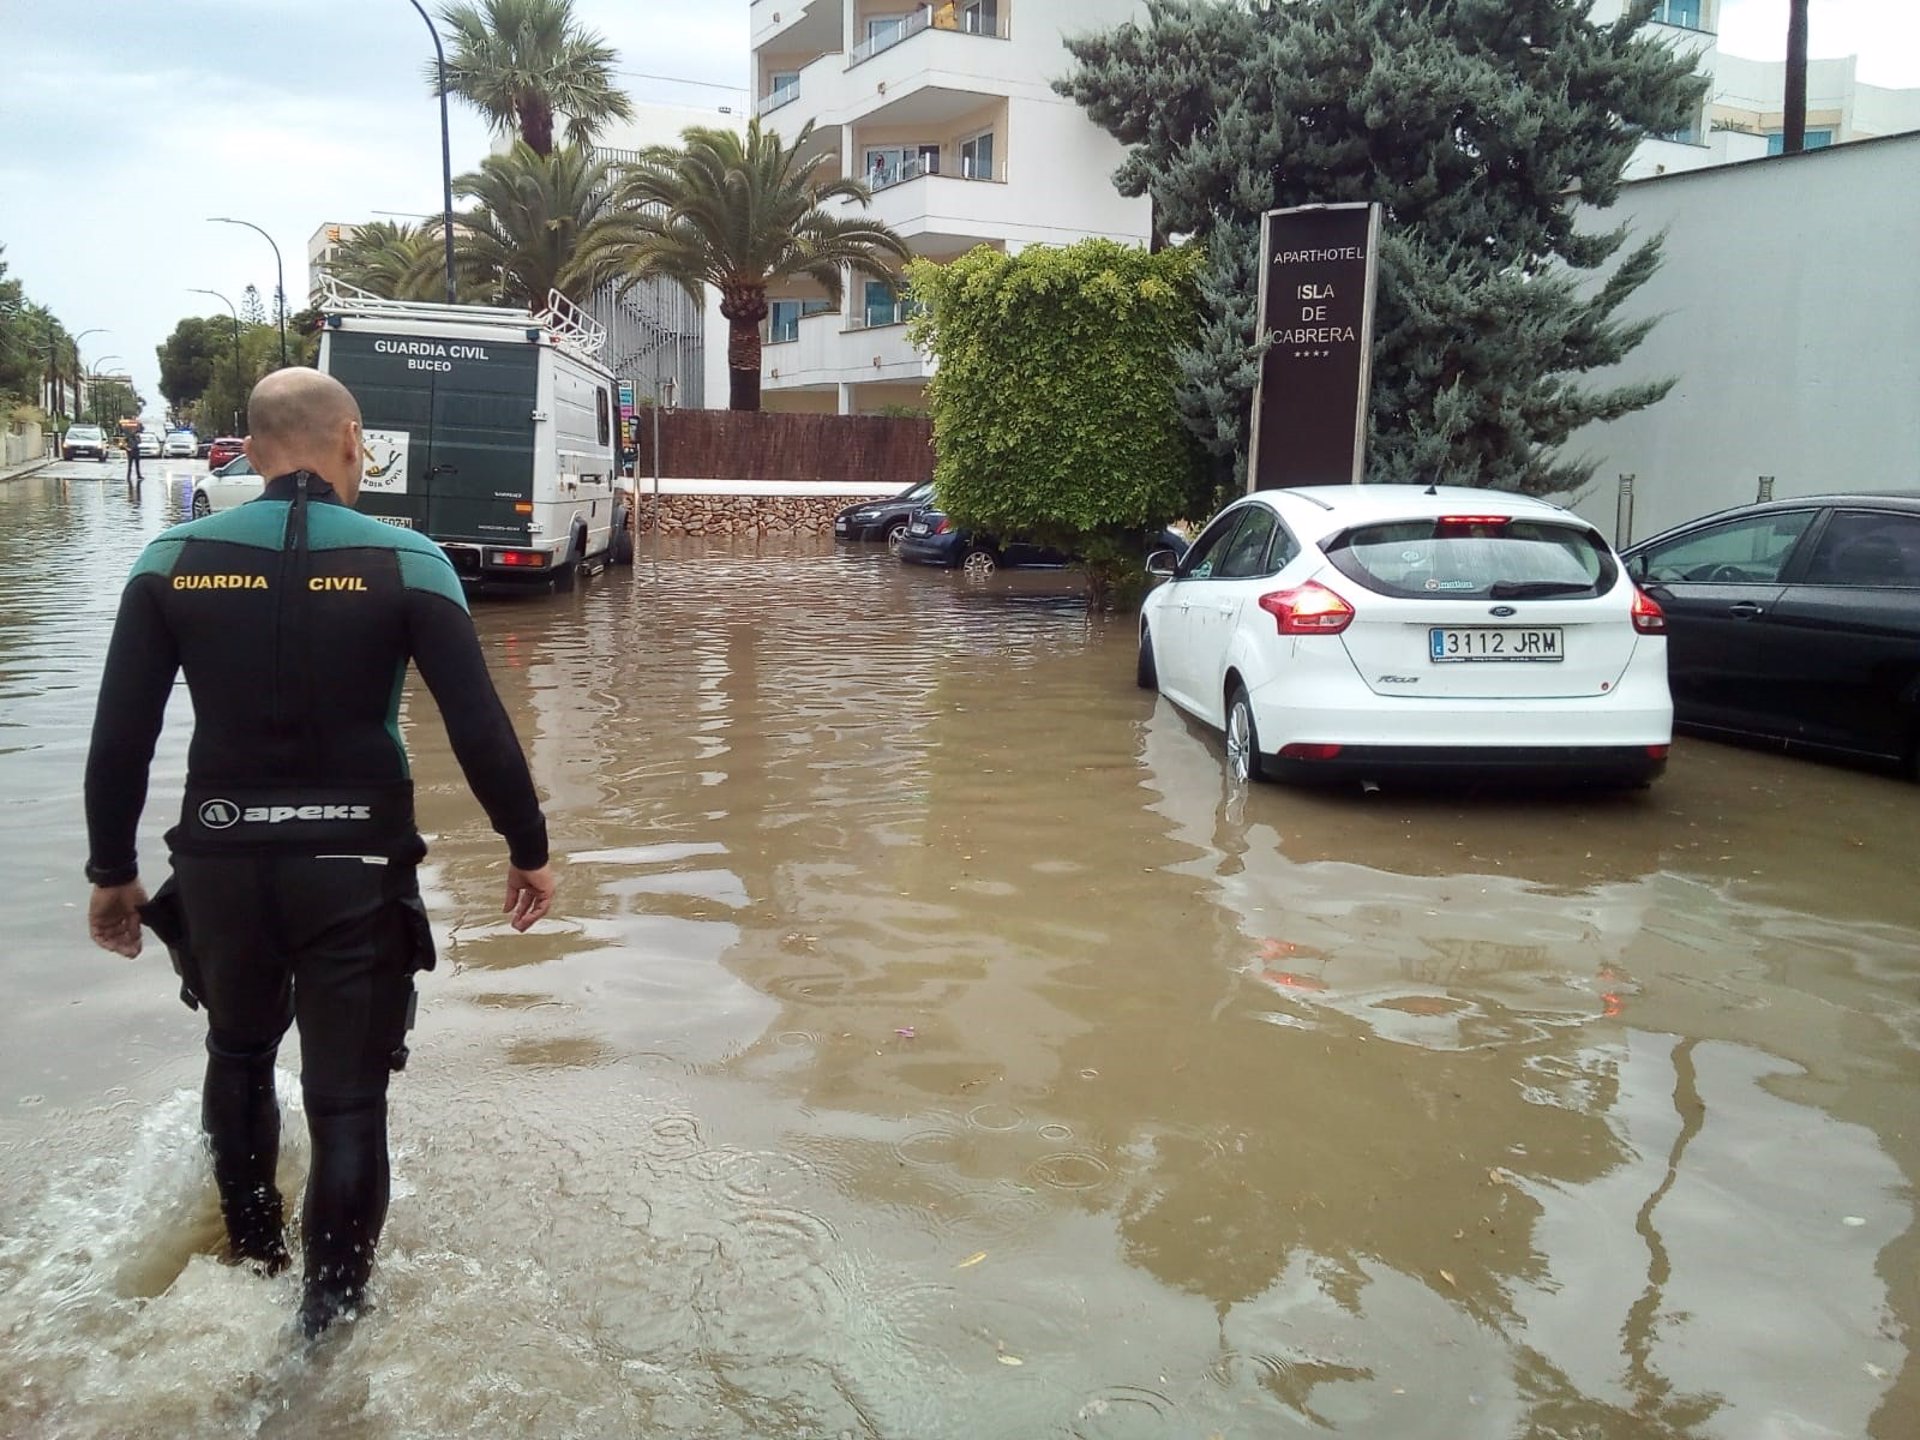 Archivo - Un agente camina en una carretera afectada por una inundación en el sur de Mallorca. - GUARDIA CIVIL - Archivo